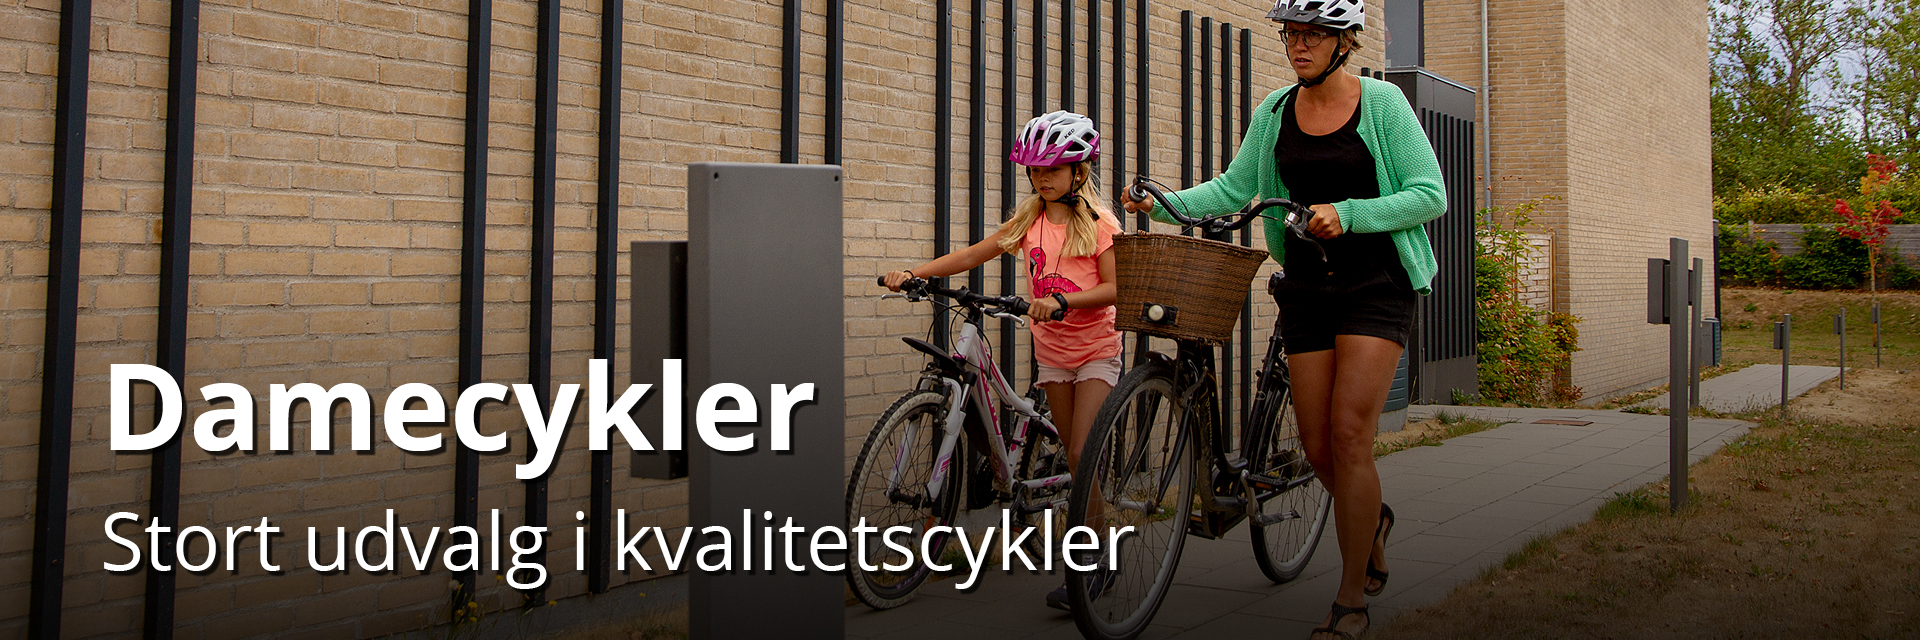 Damecykler www.cykeldoktoren.dk